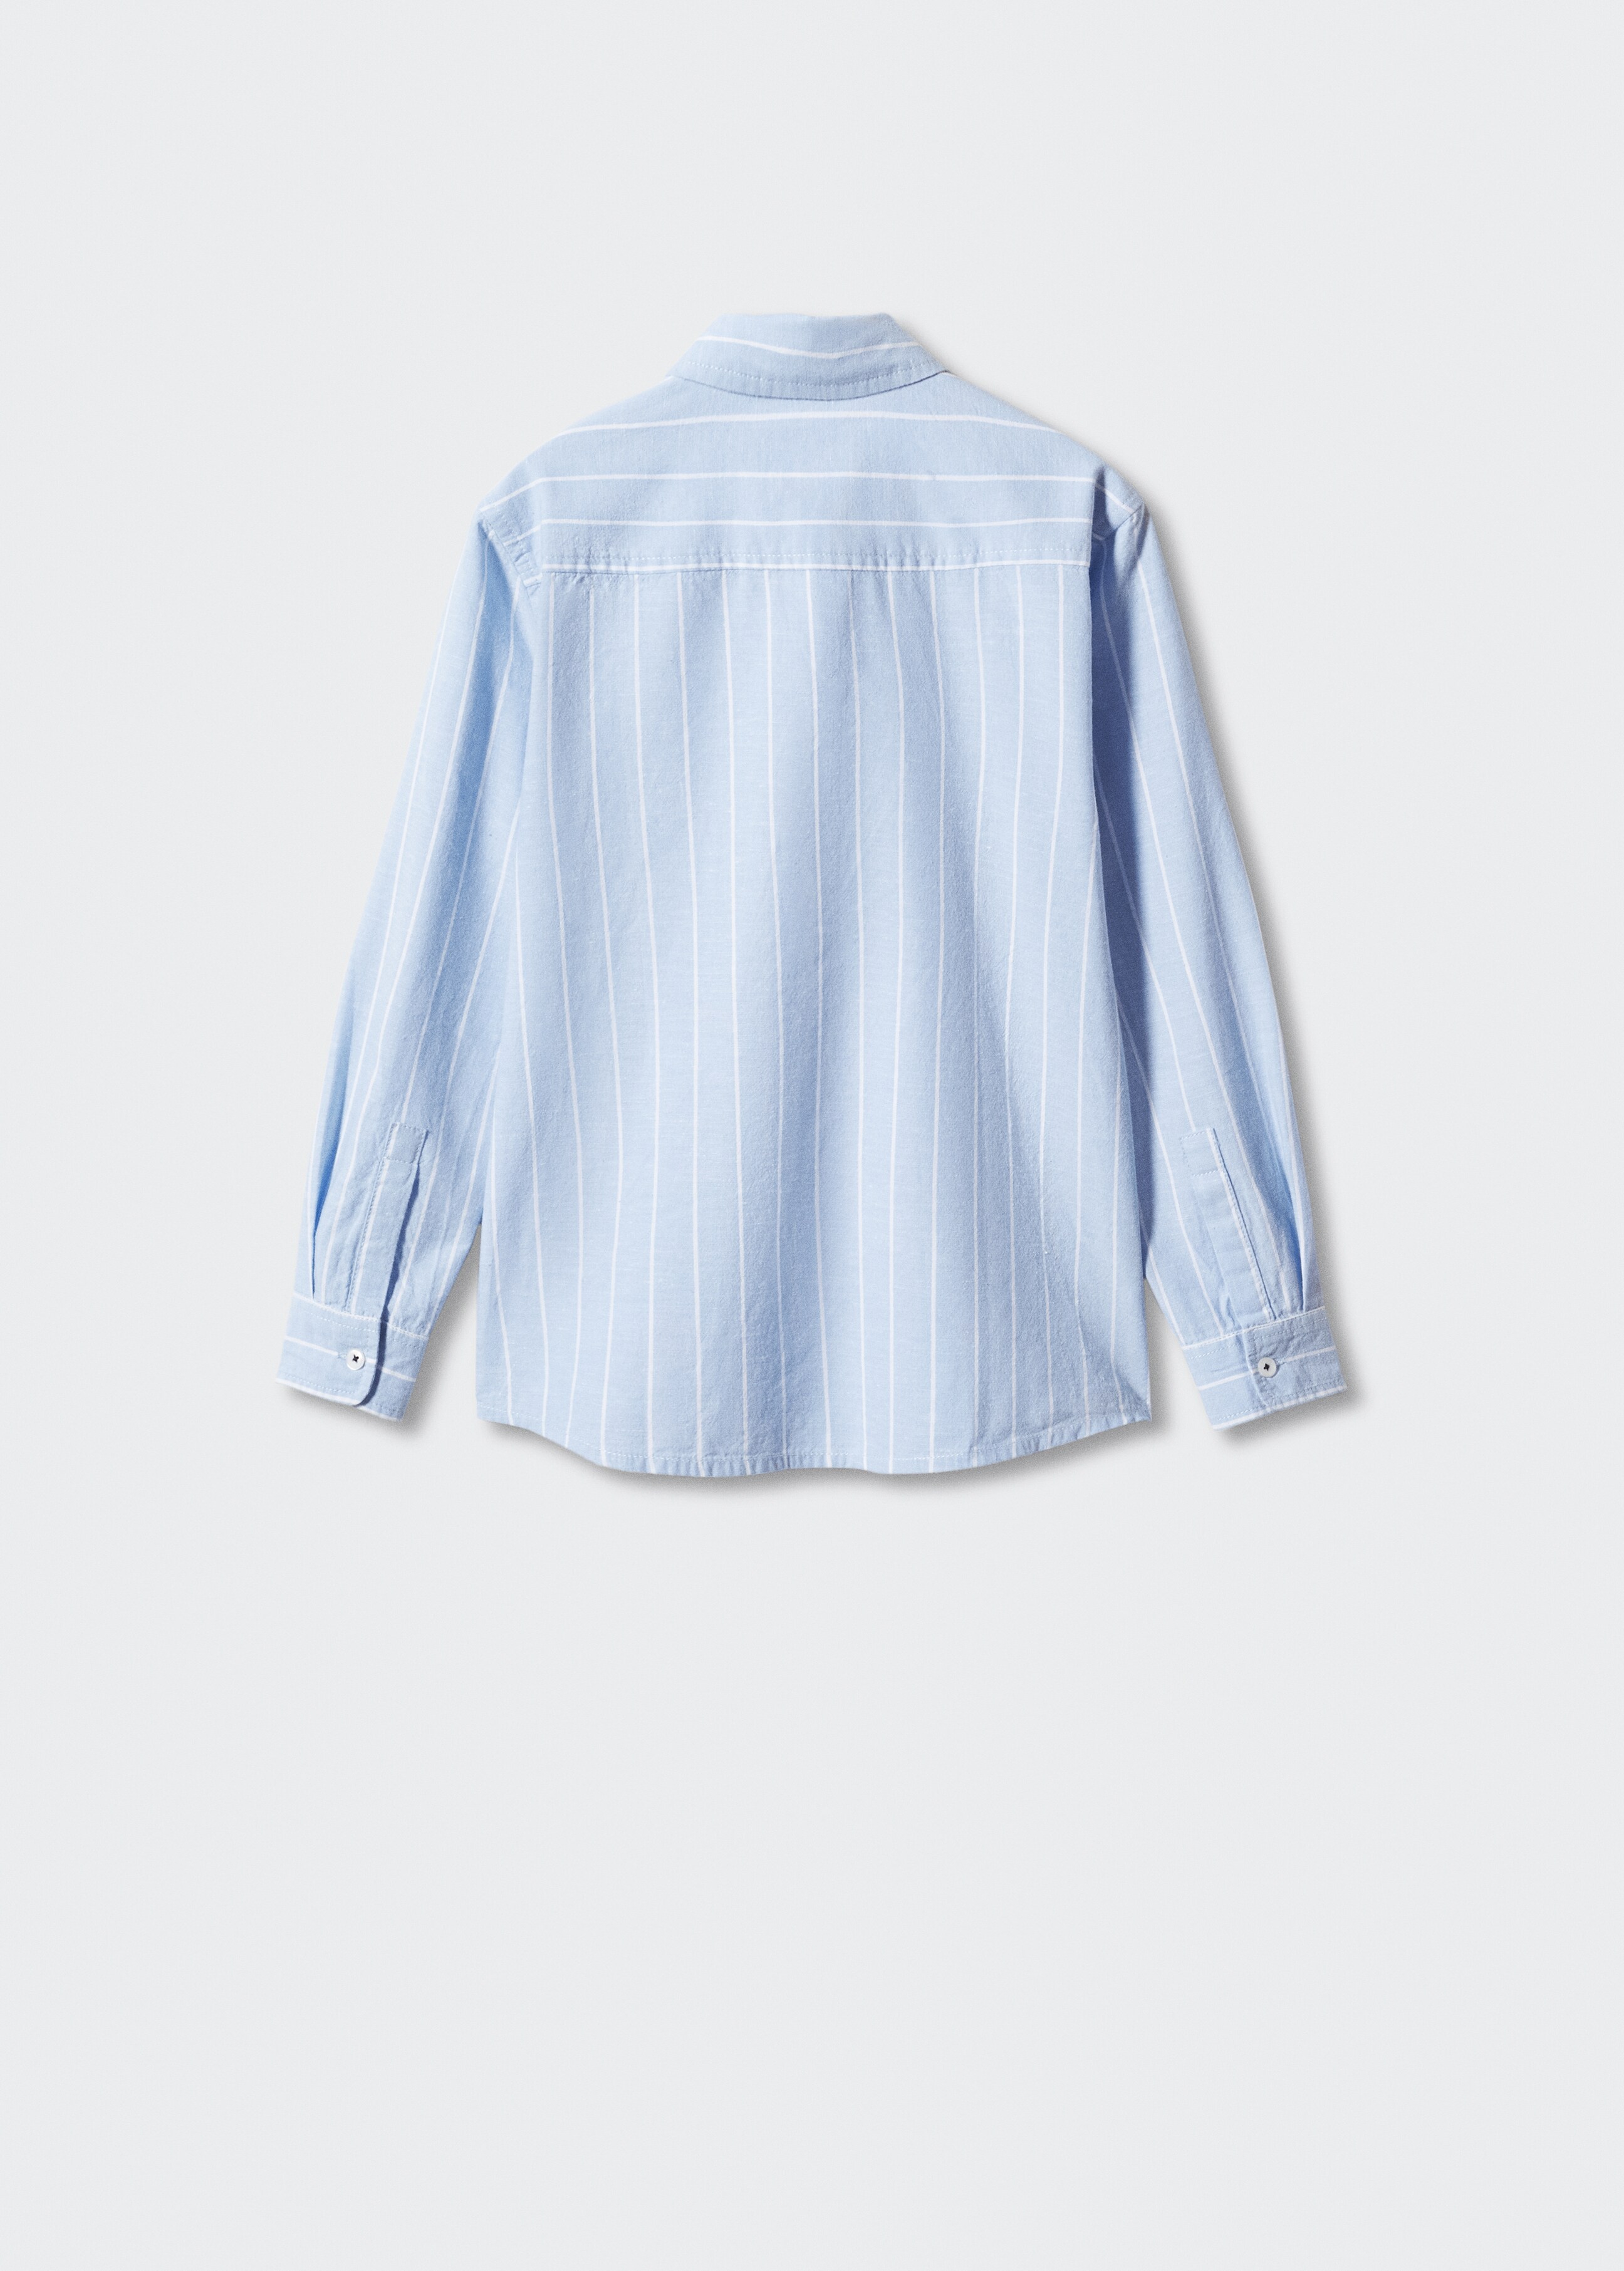 Camisa algodón lino rayas  - Reverso del artículo